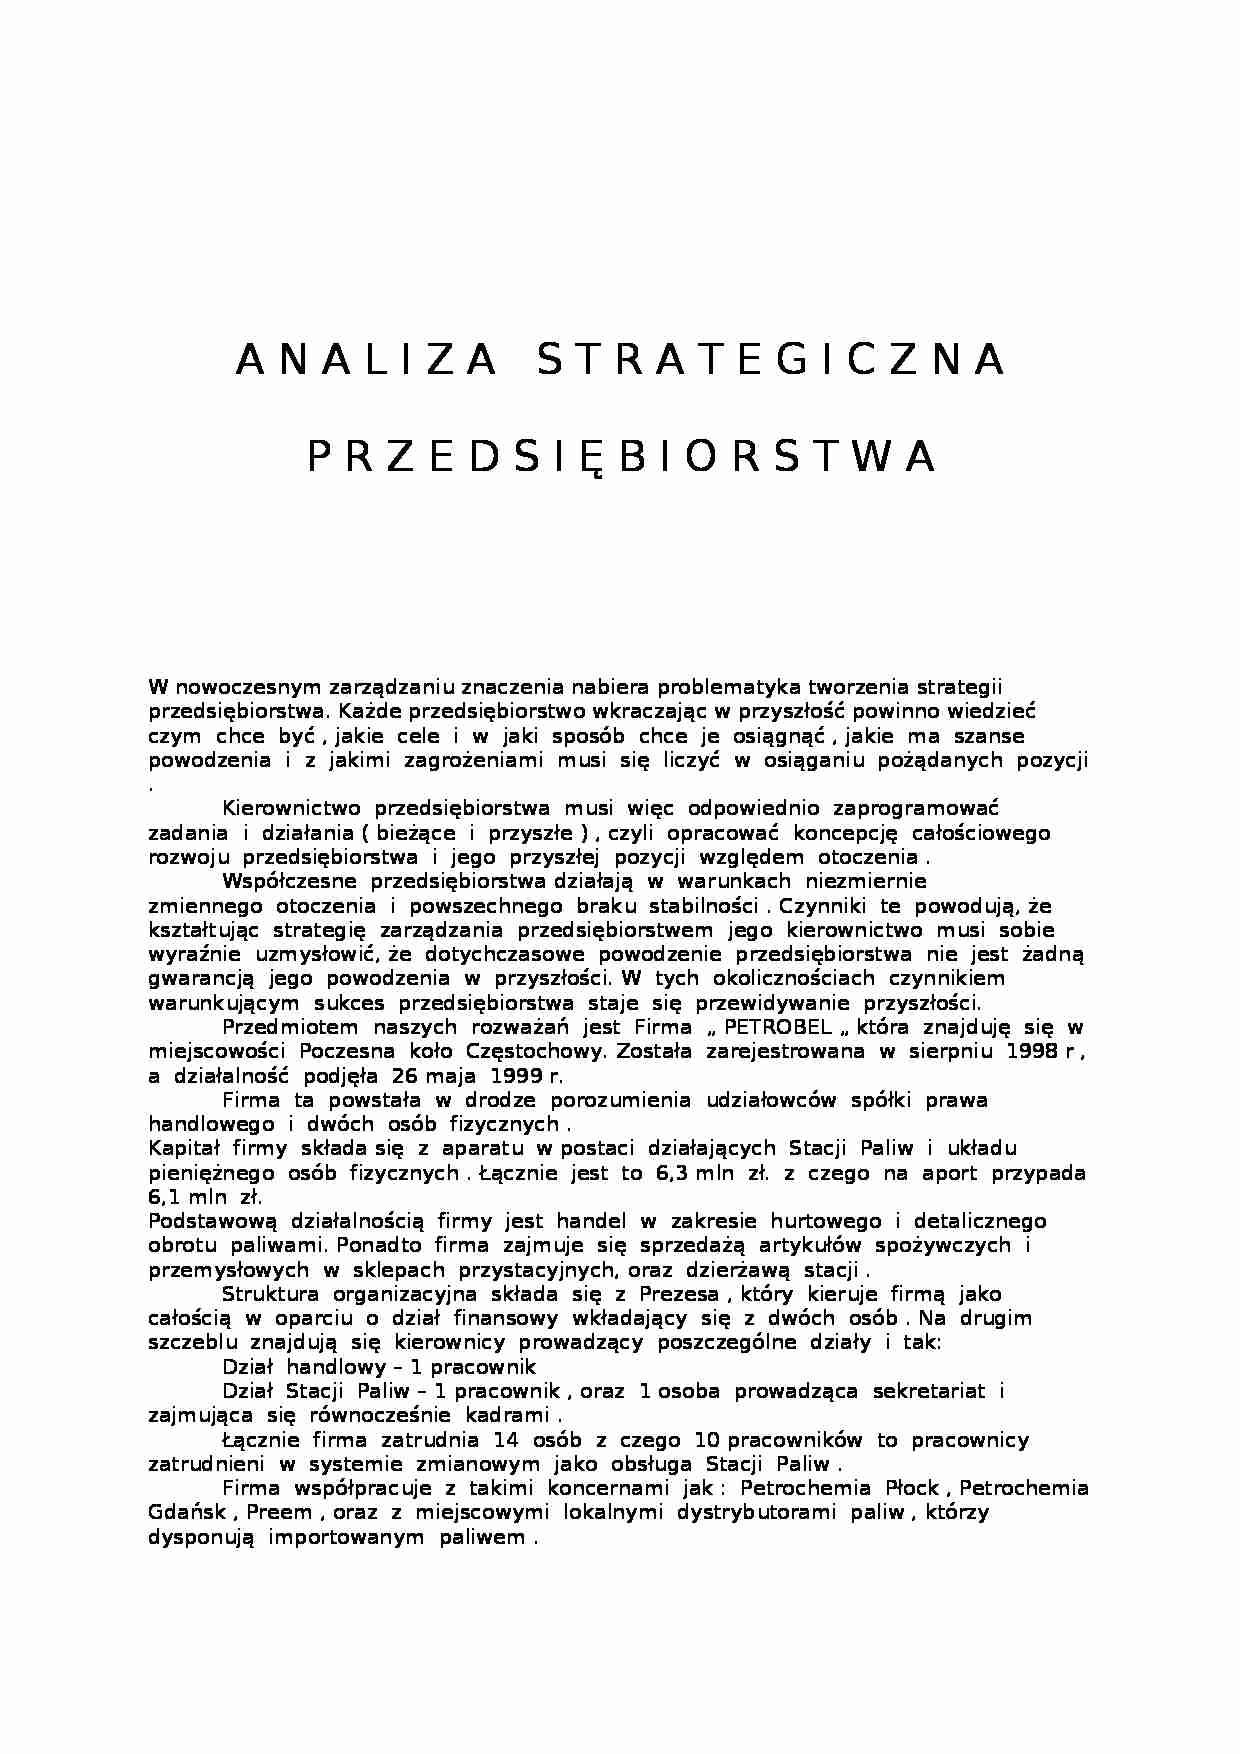 Analiza strategiczna przedsiębiorstwa - Zarządzanie strategiczne - strona 1